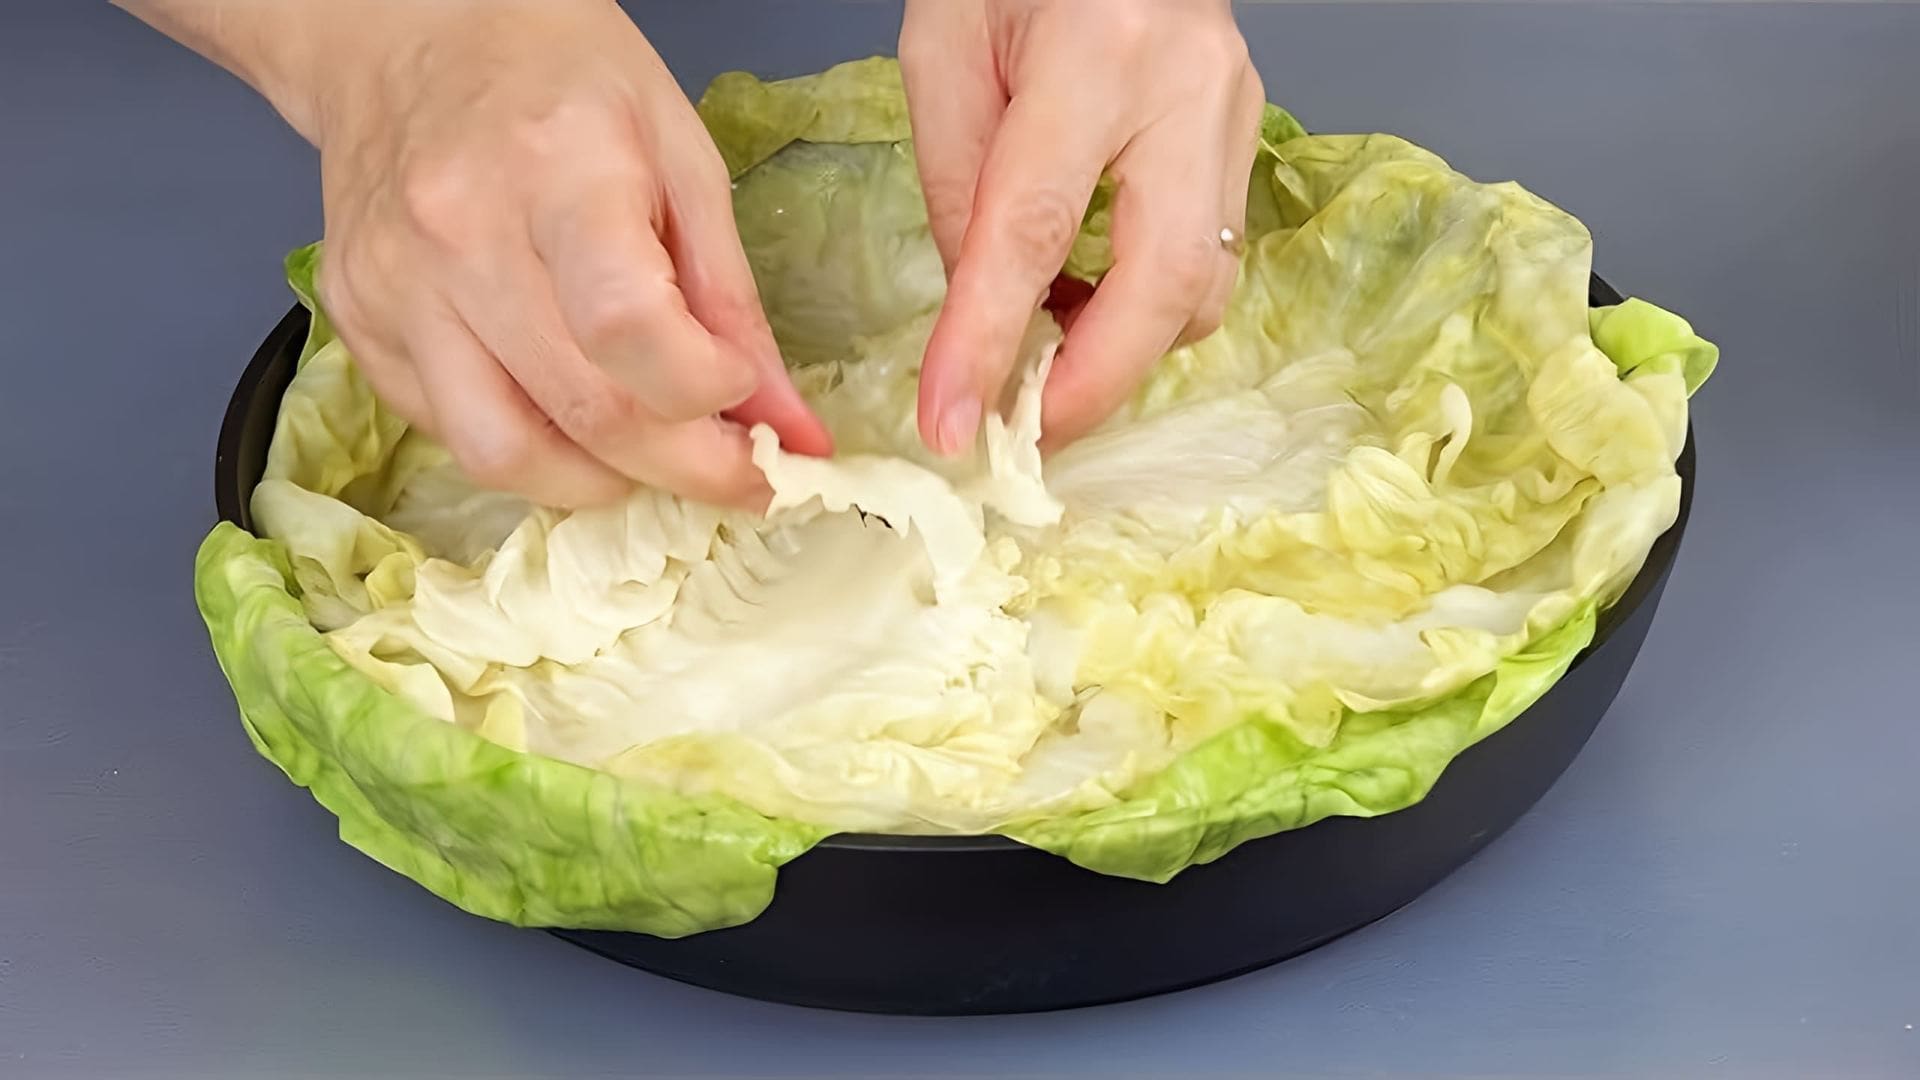 В этом видео показаны 5 рецептов из капусты, включая оладьи, жареную картошку, ленивый капустный пирог и запеканку с мясным фаршем